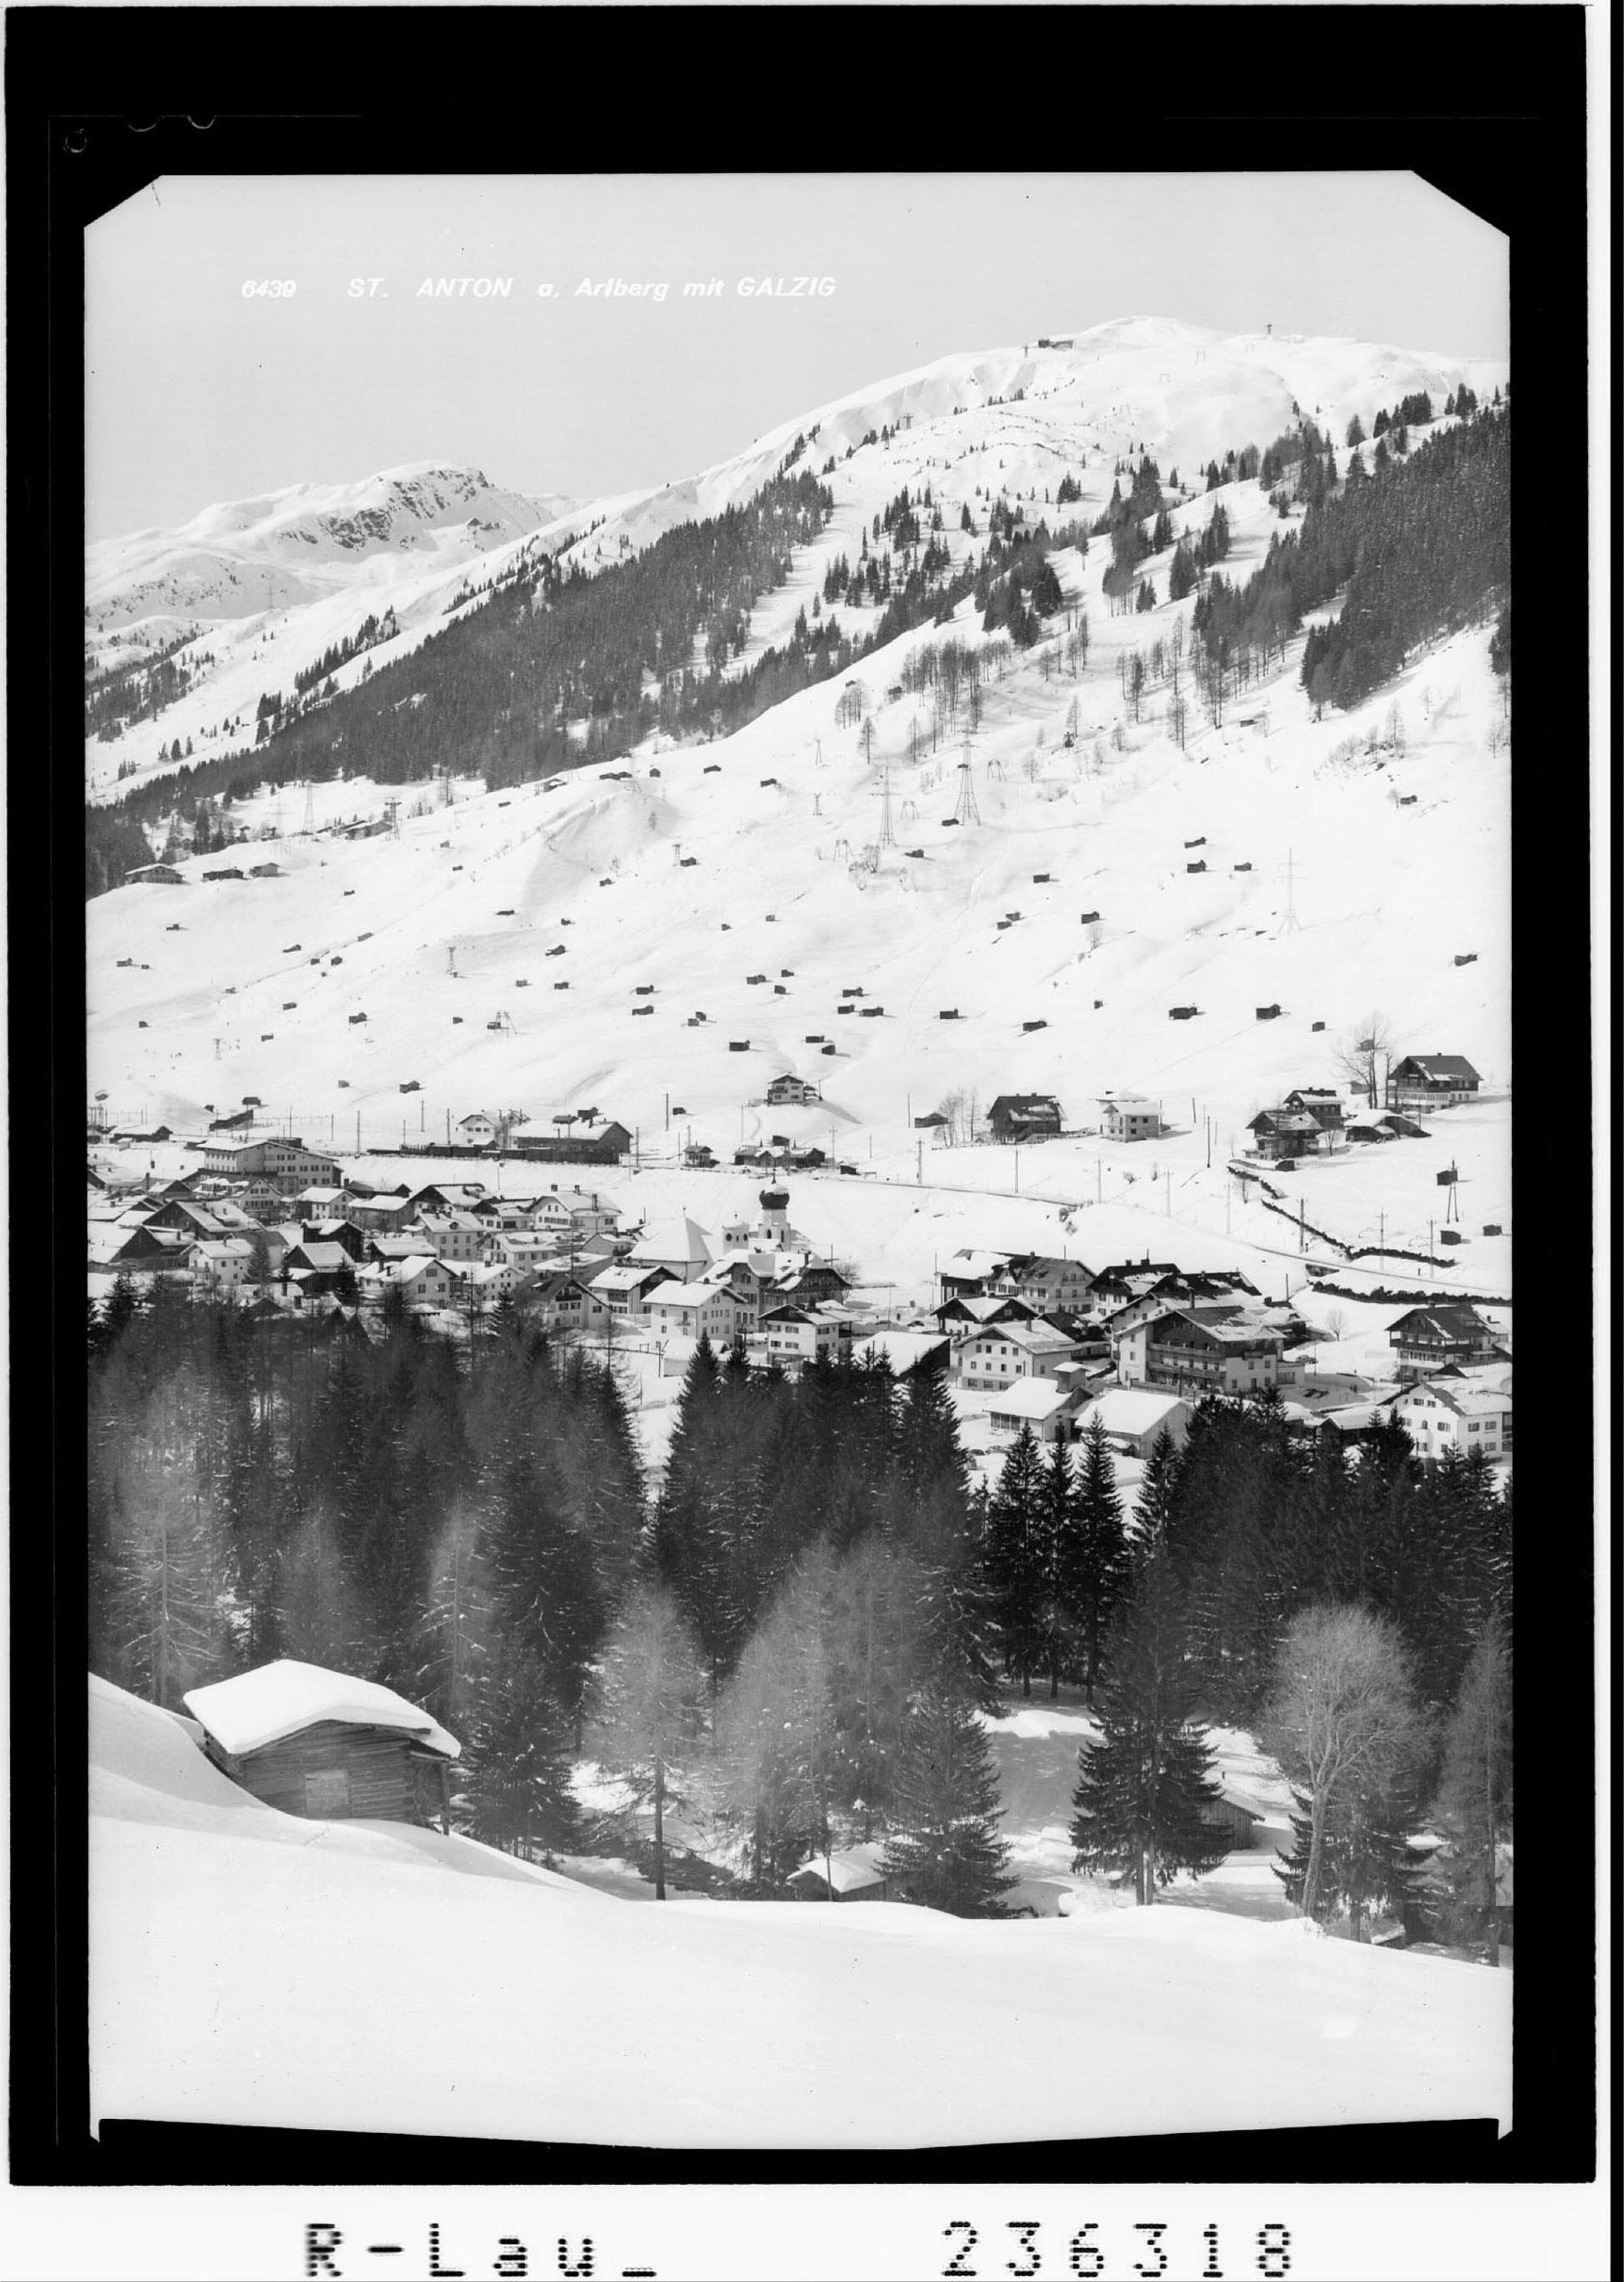 St. Anton am Arlberg mit Galzig></div>


    <hr>
    <div class=